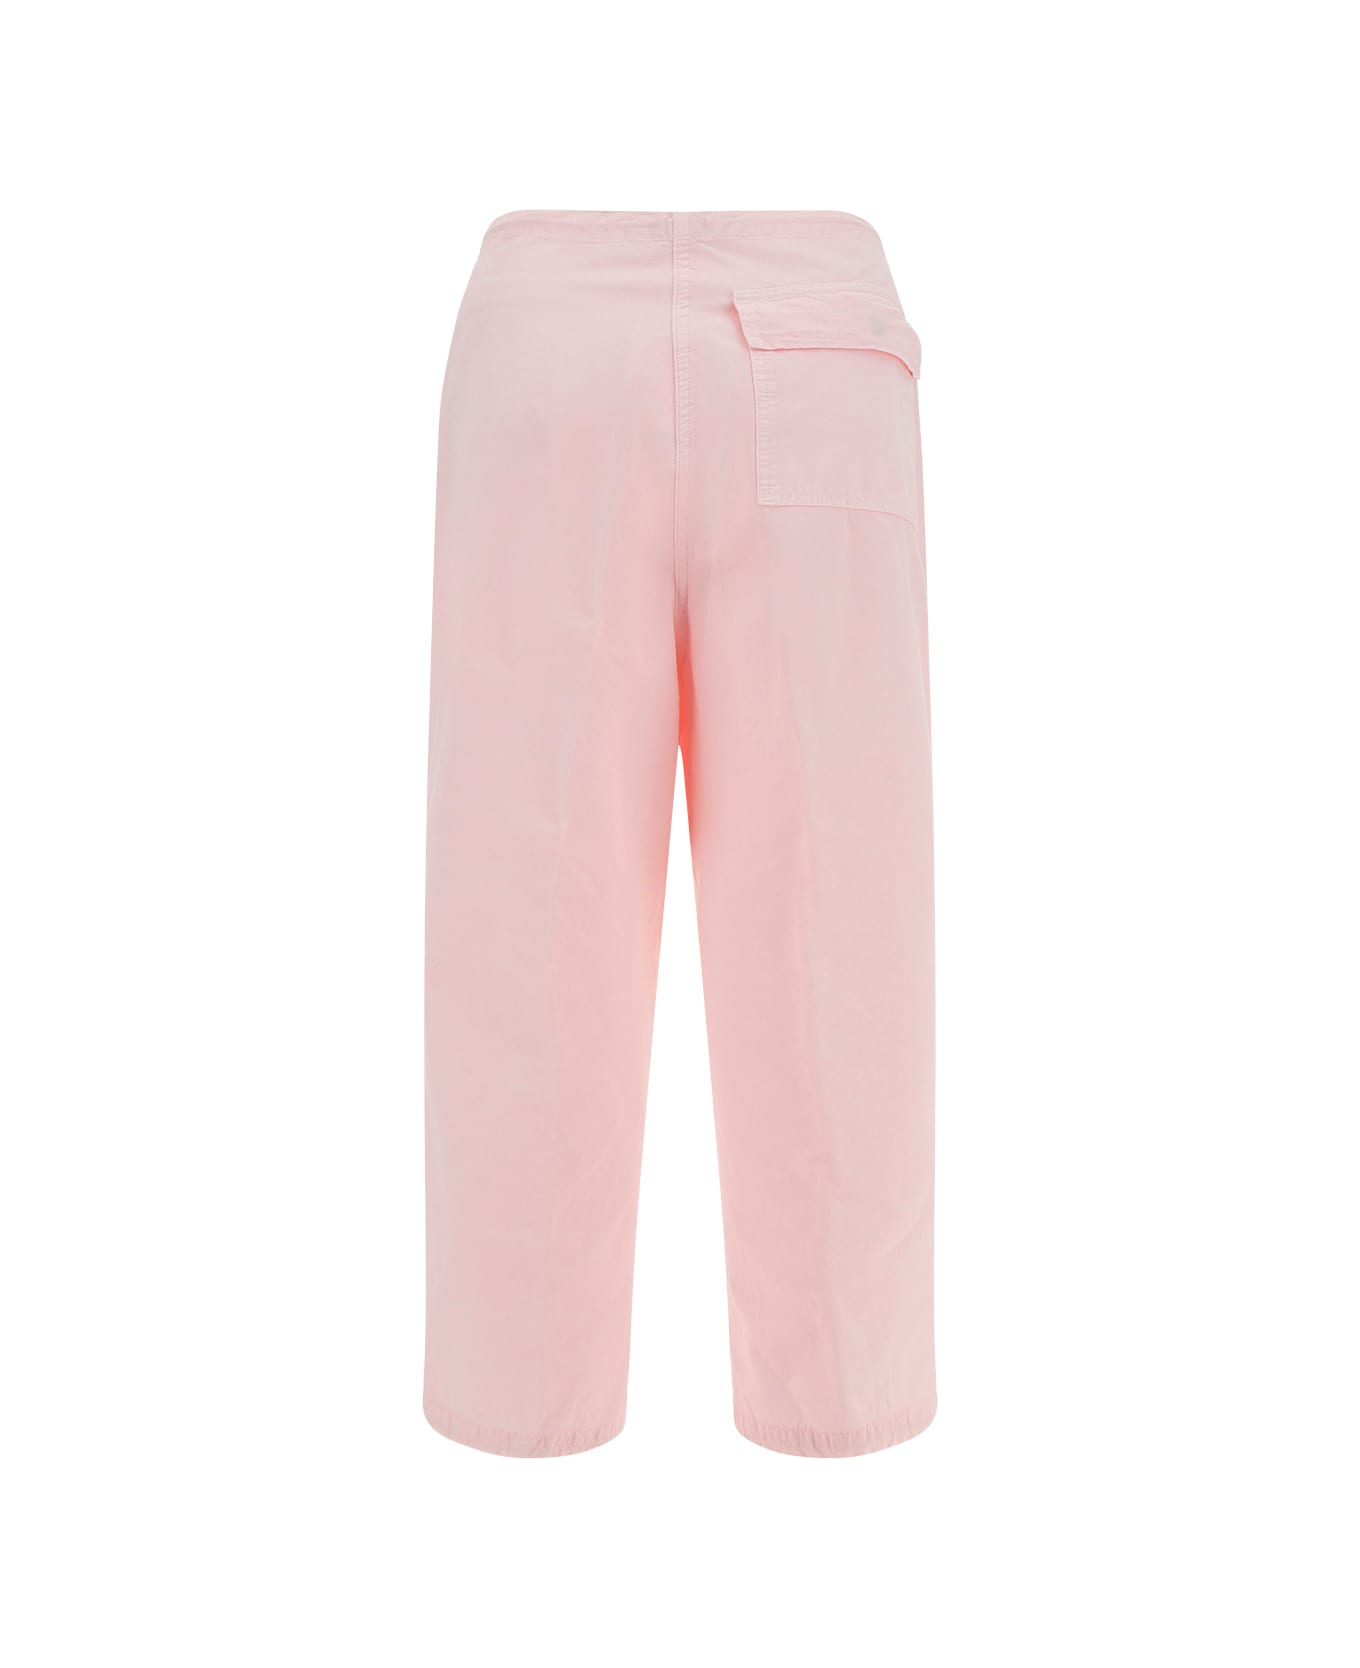 DARKPARK Blair Vintage Pants - Pwdp Powder Pink